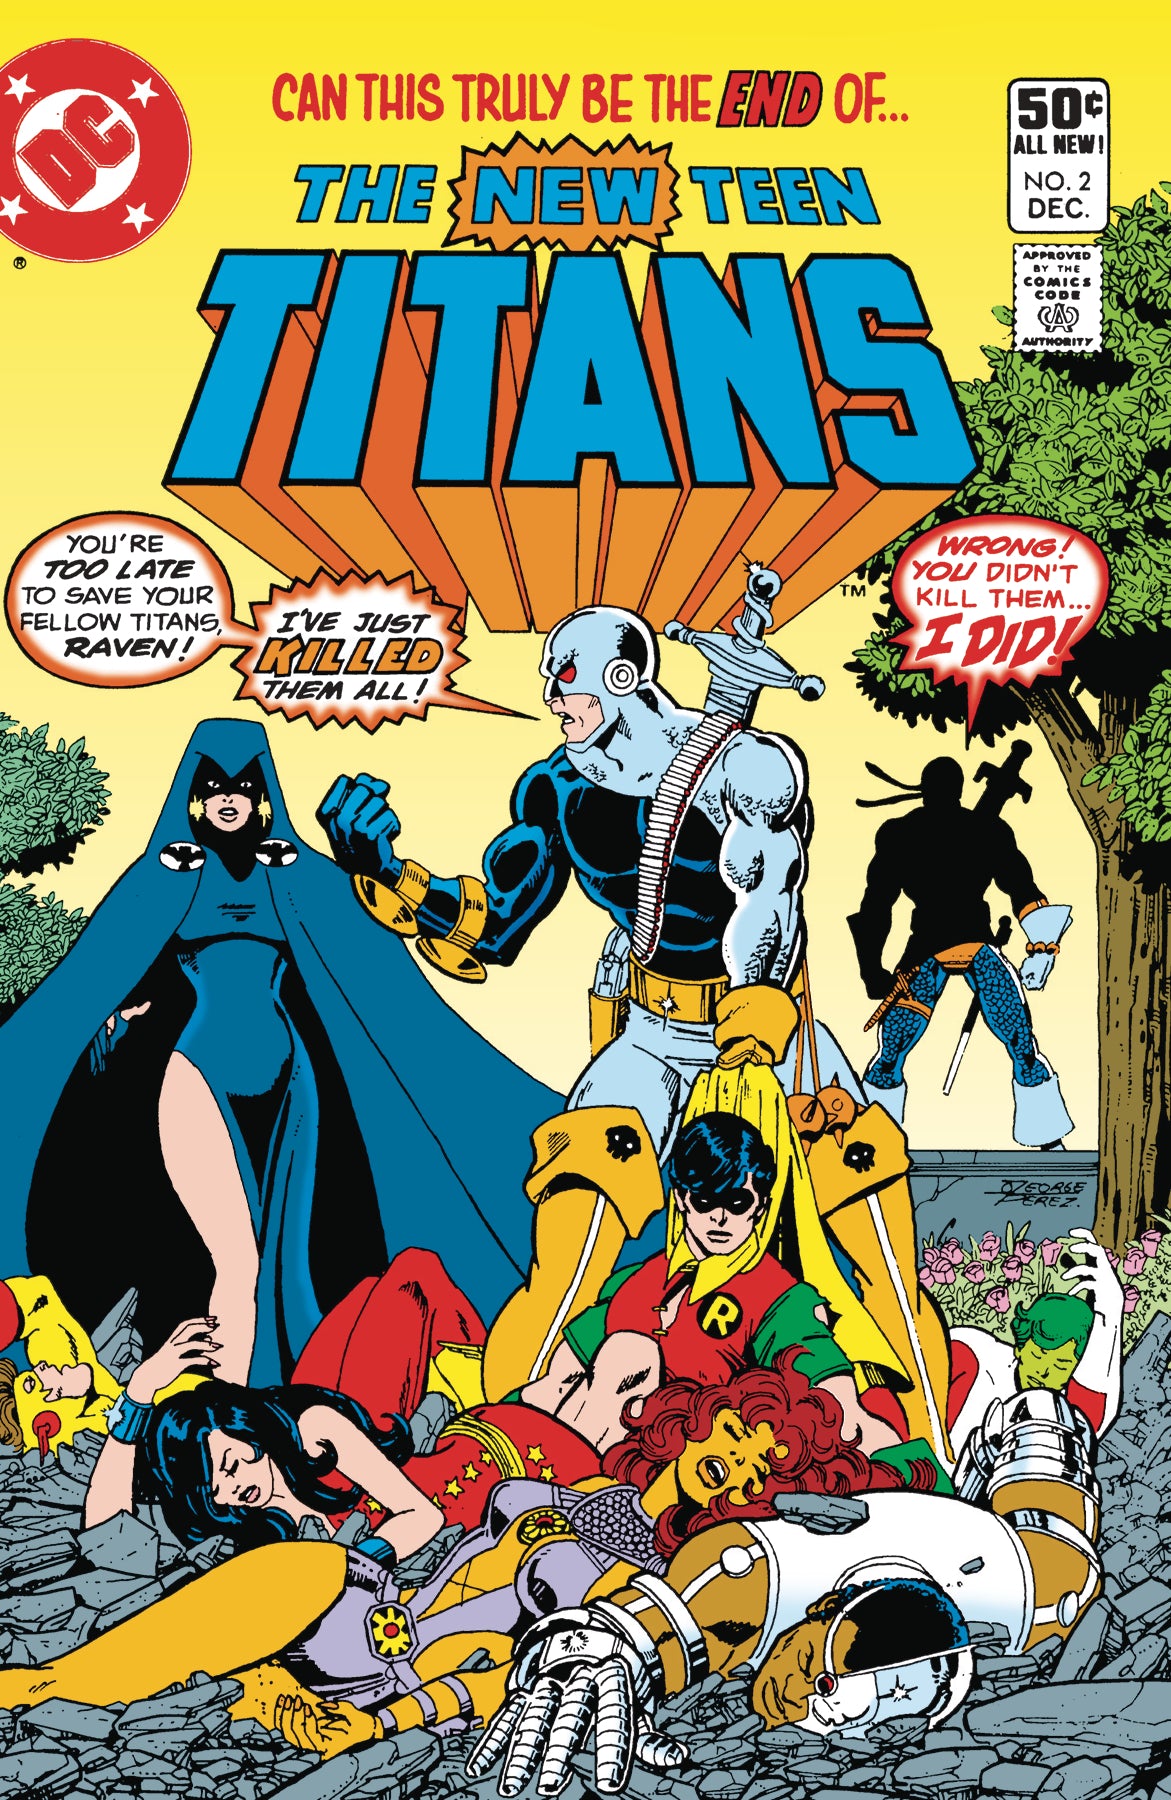 DOLLAR COMICS THE NEW TEEN TITANS #2 | L.A. Mood Comics and Games